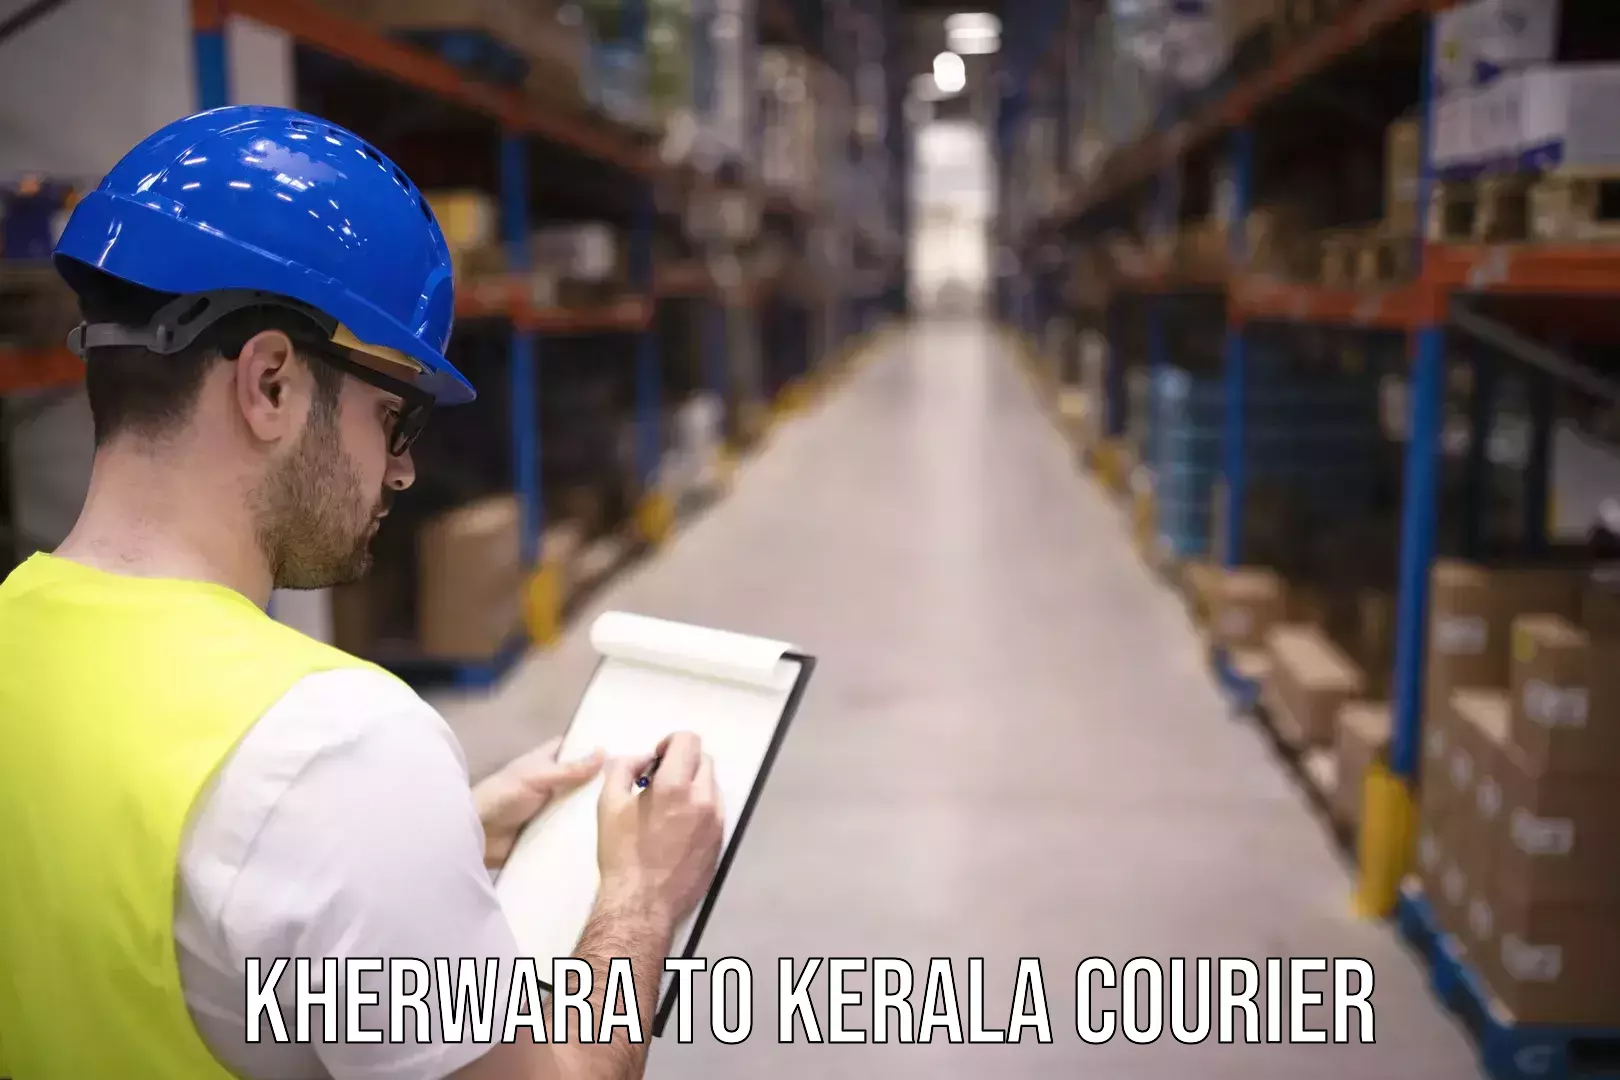 Courier service comparison Kherwara to Wayanad